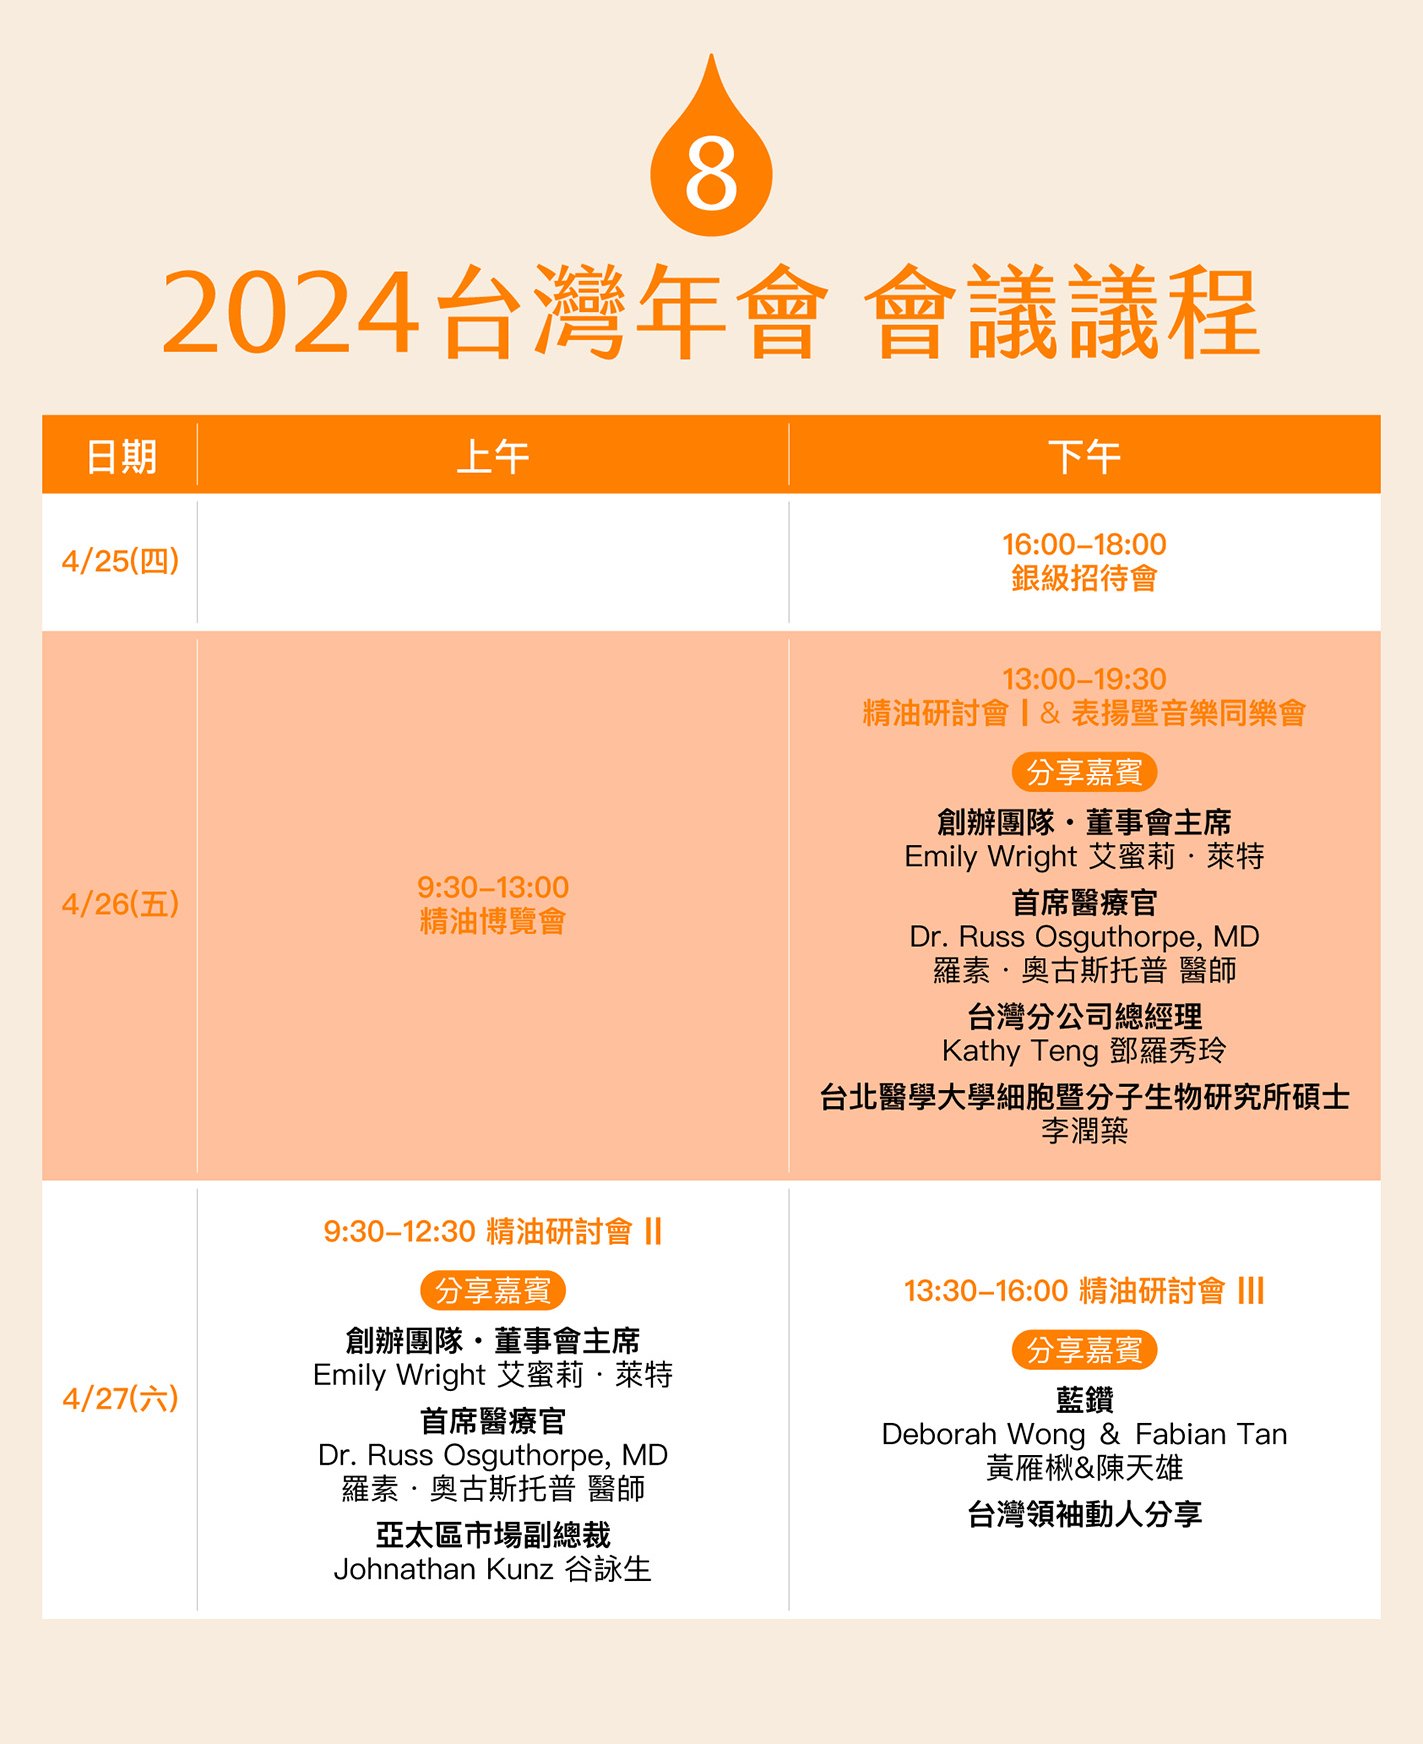 2024 國際精油研討會暨台灣年會8大特點